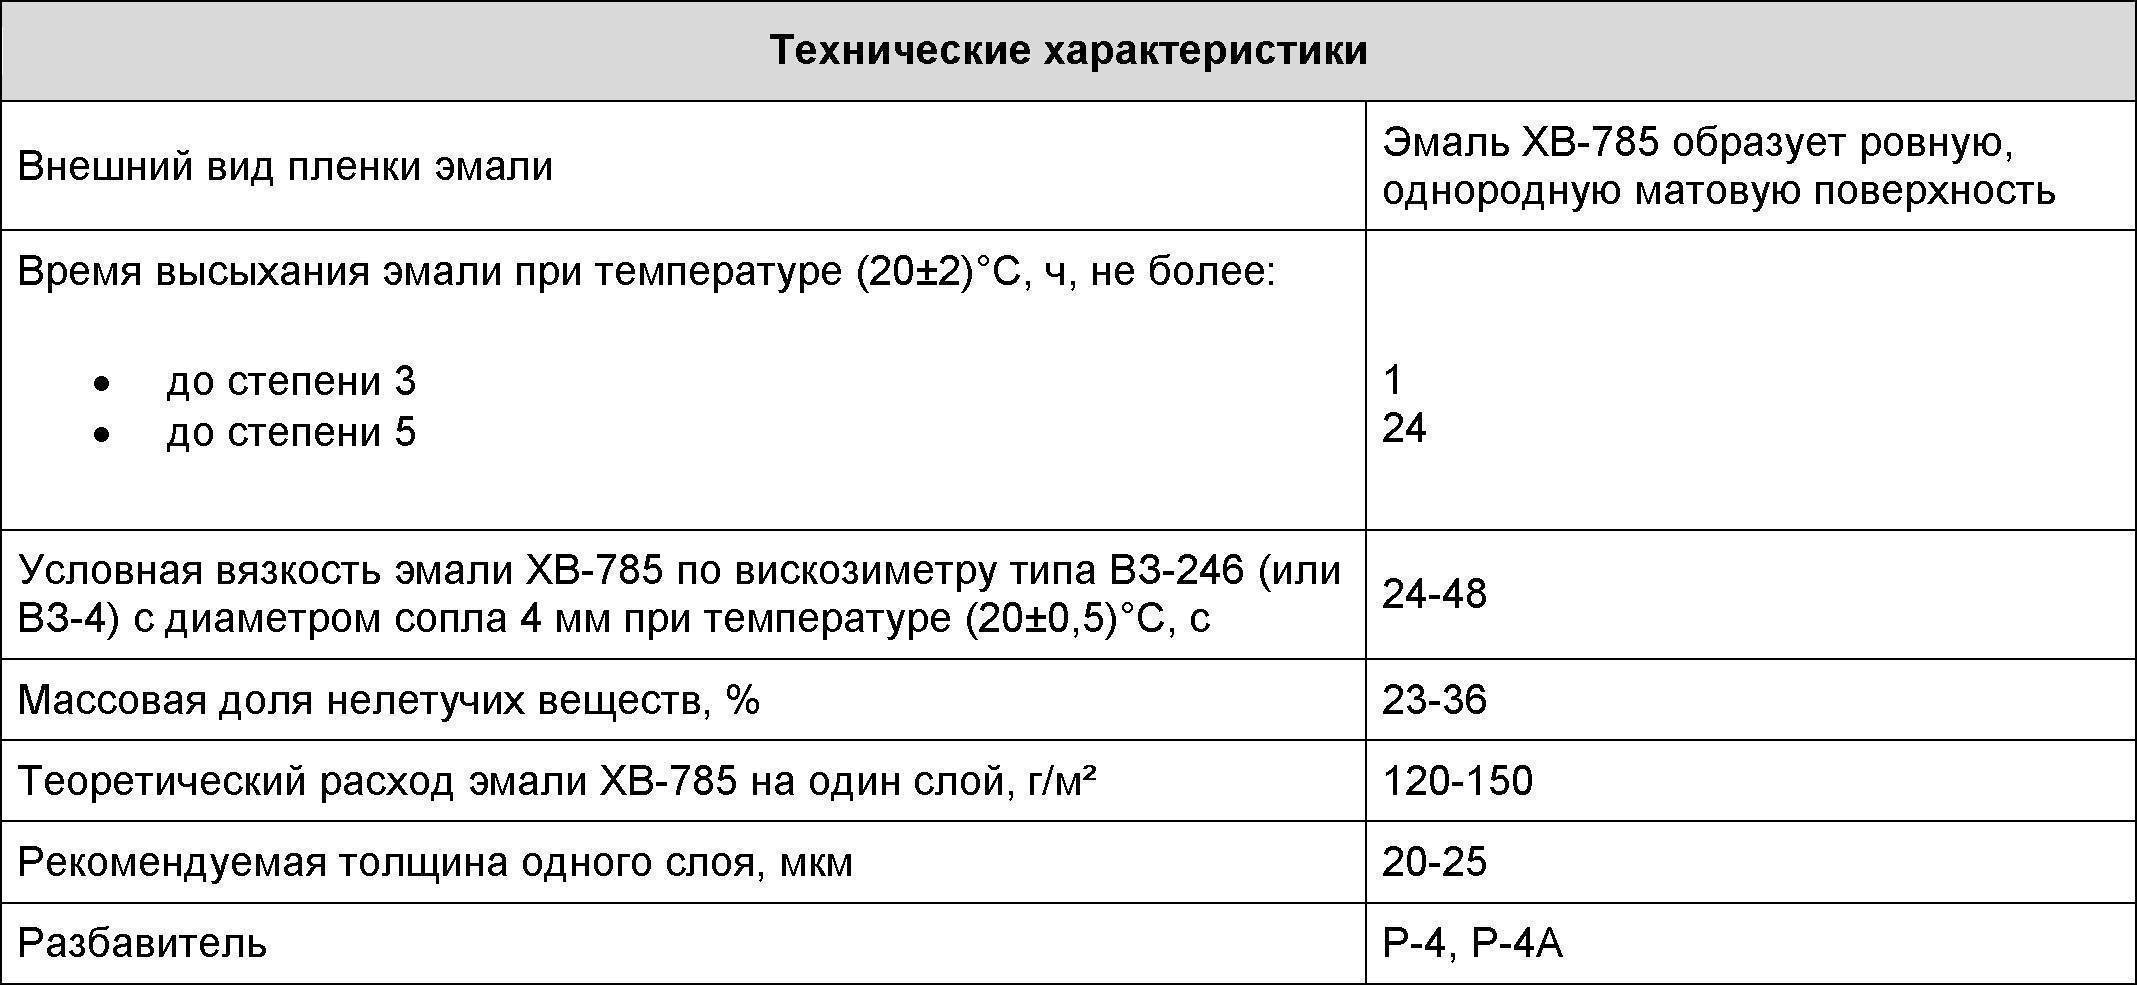 Эмаль «хв-124»: технические характеристики, расход и применение